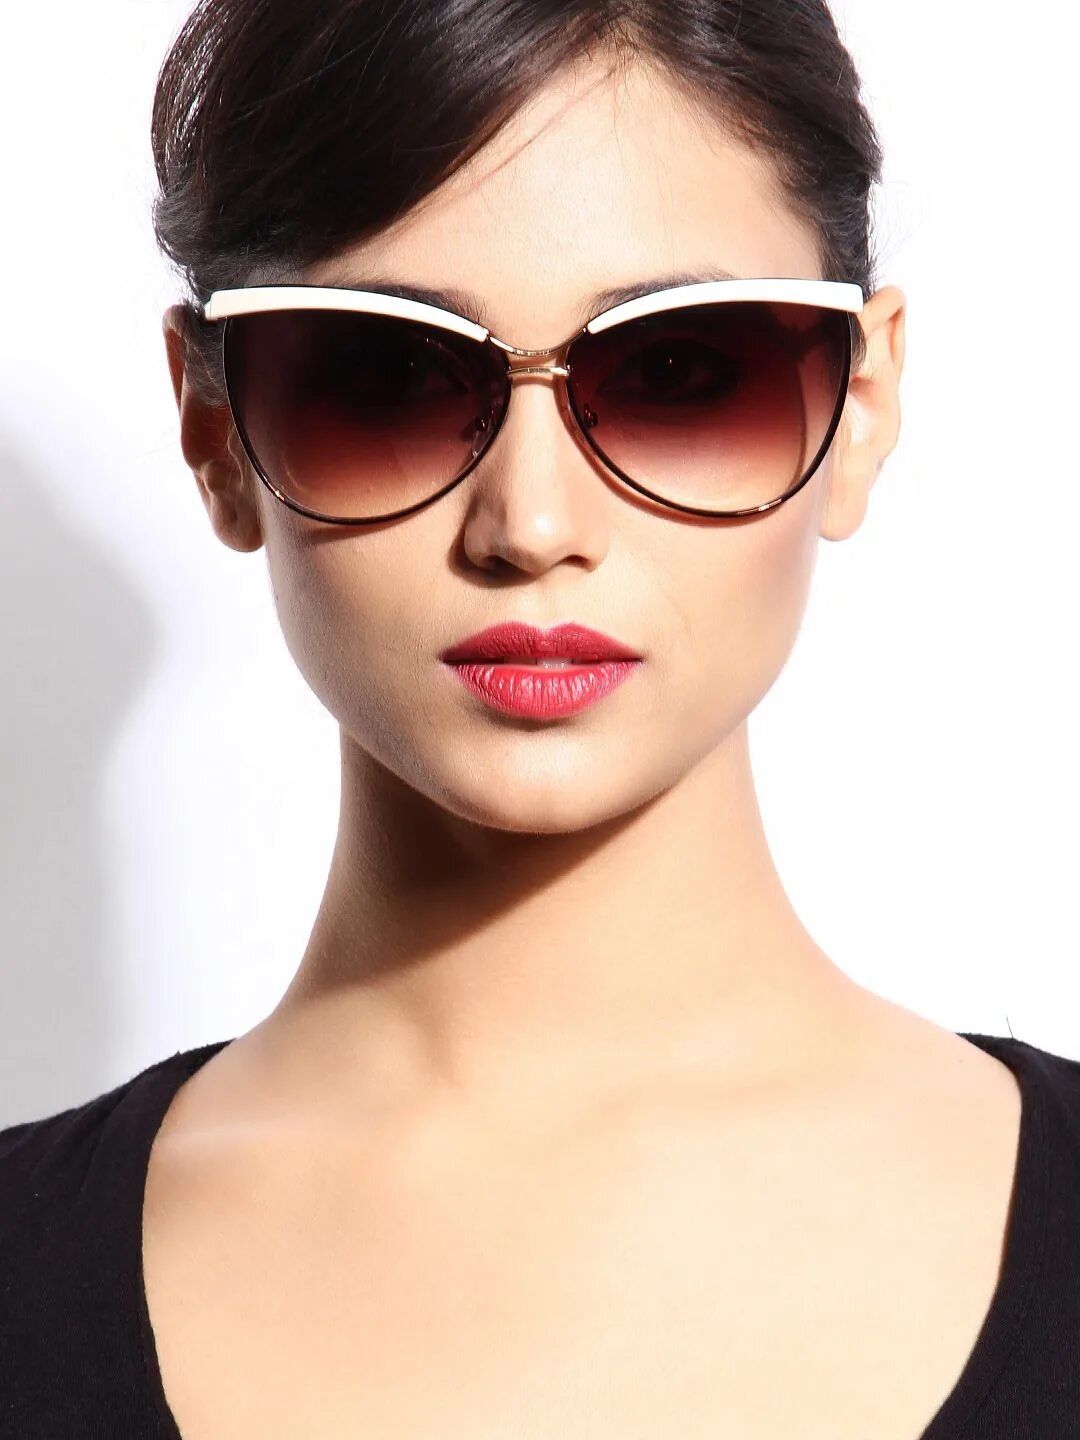 Модели солнцезащитных очков. Очки женские. Очки солнцезащитные женские. Стильные очки. Модные солнцезащитные очки.